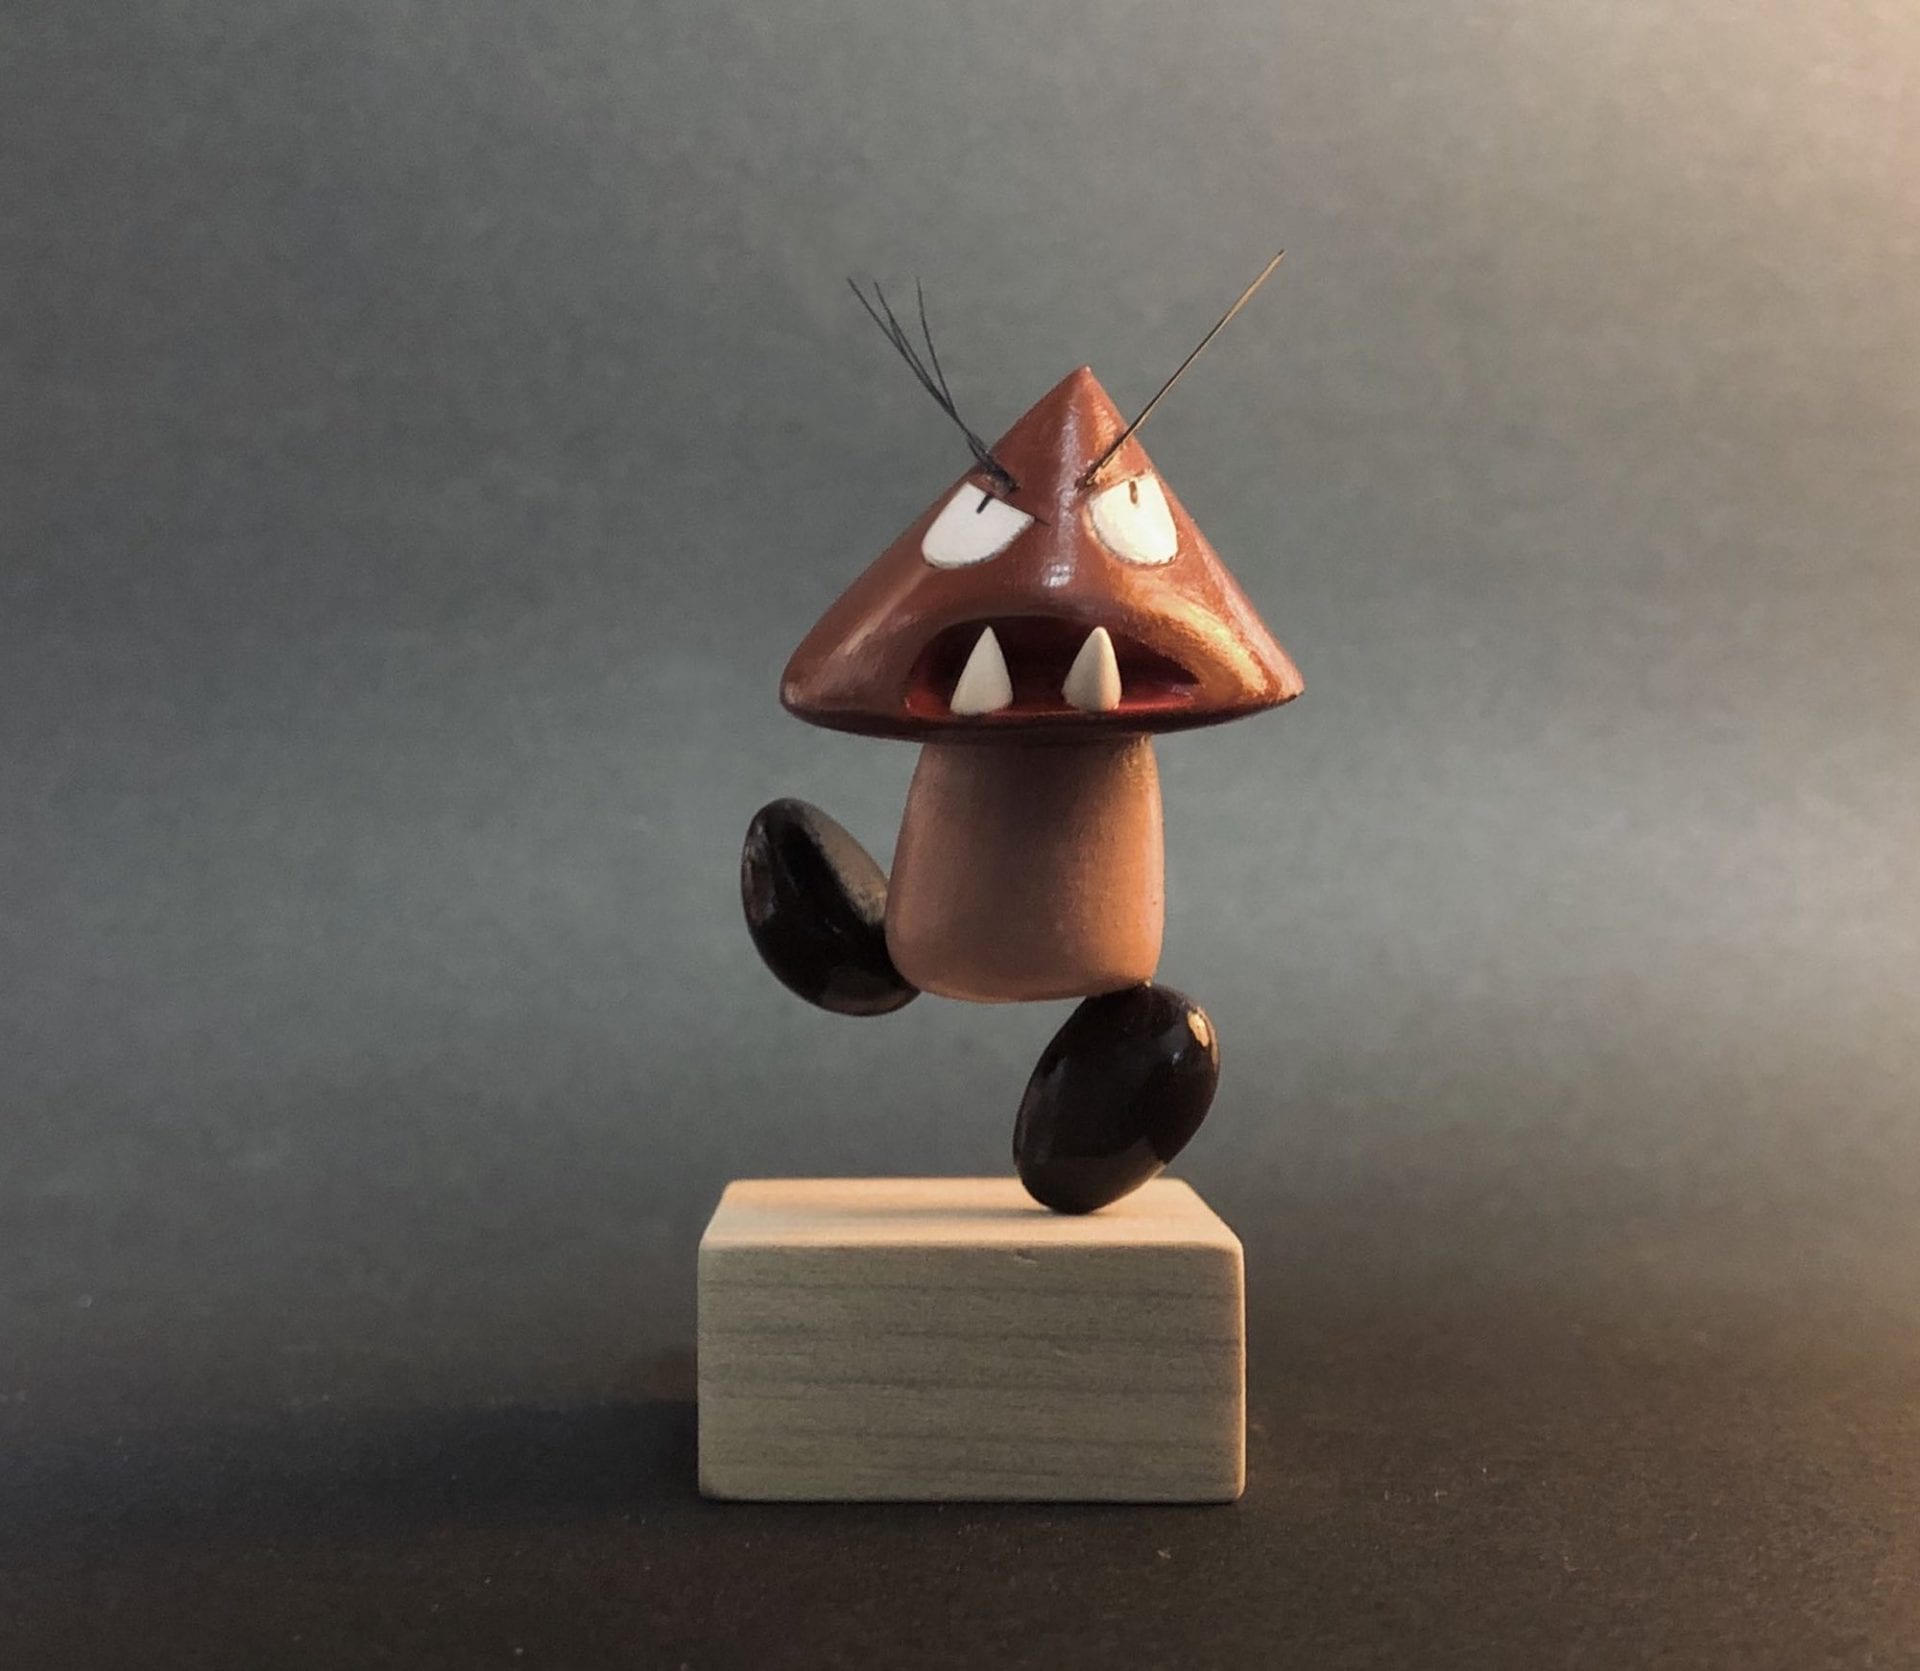 L'artiste Taku Inoue transforme les dessins d'enfants en petites figurines